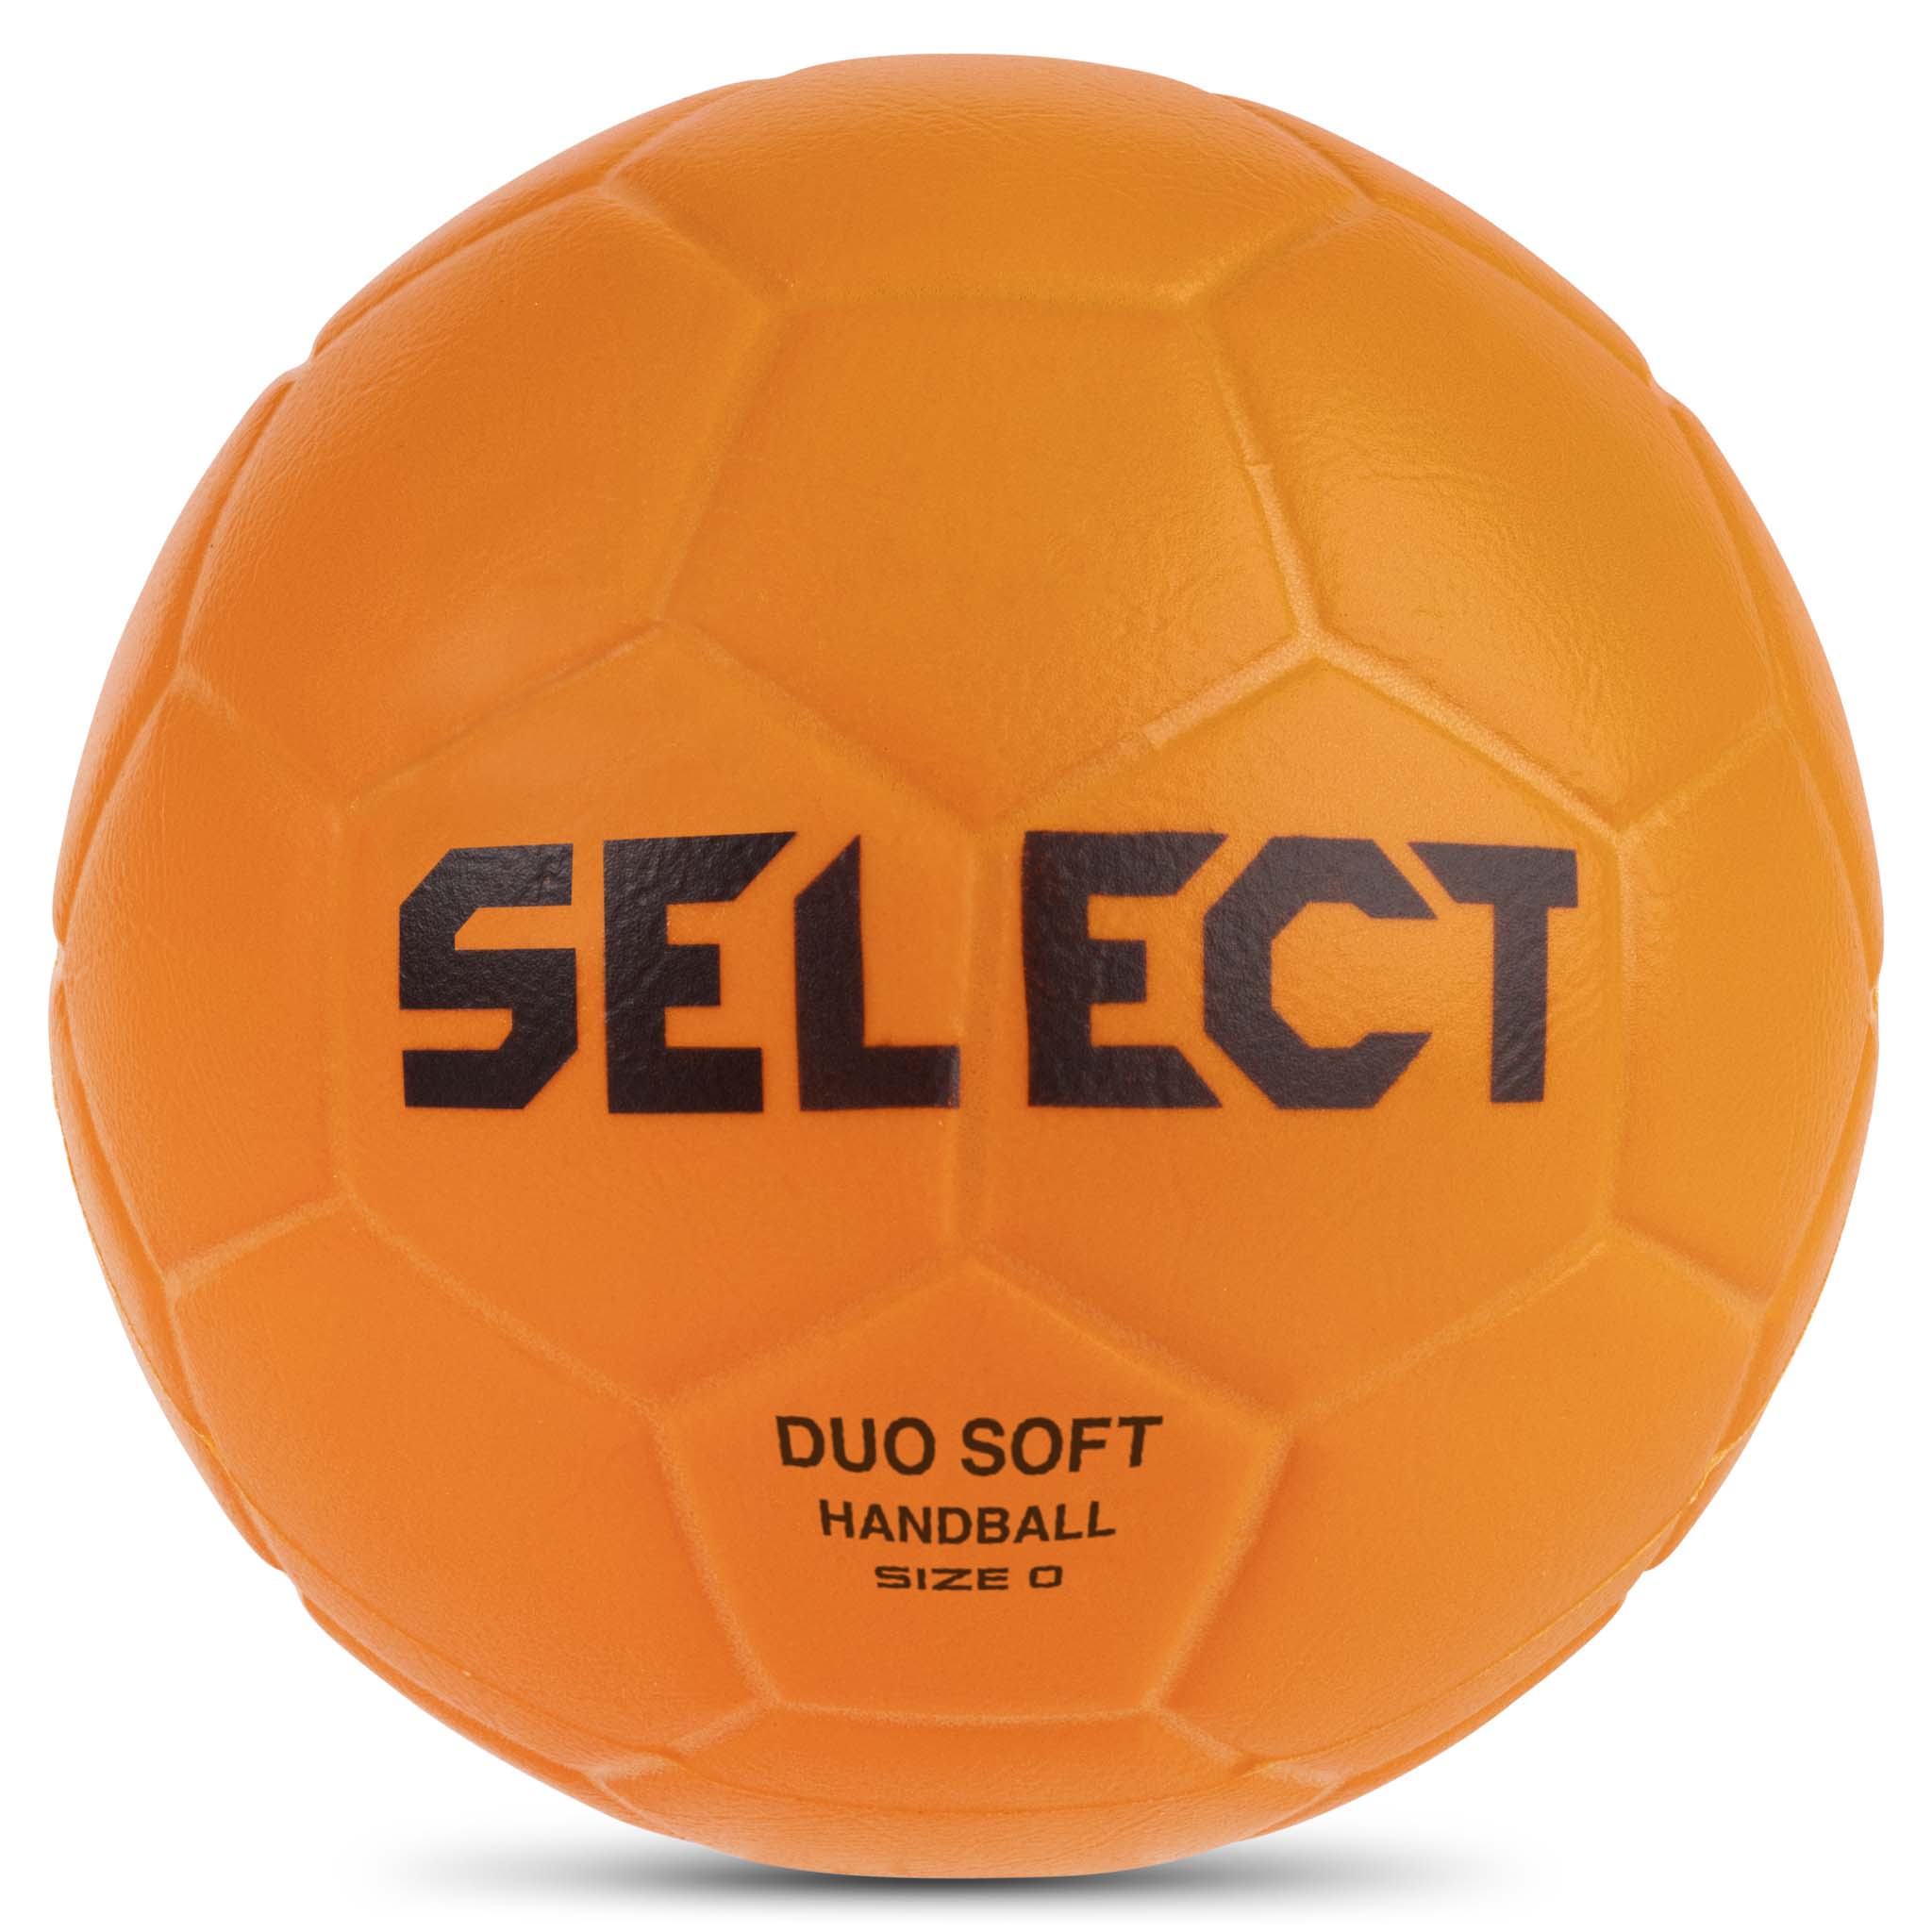 Handboll - Duo Soft #färg_orange